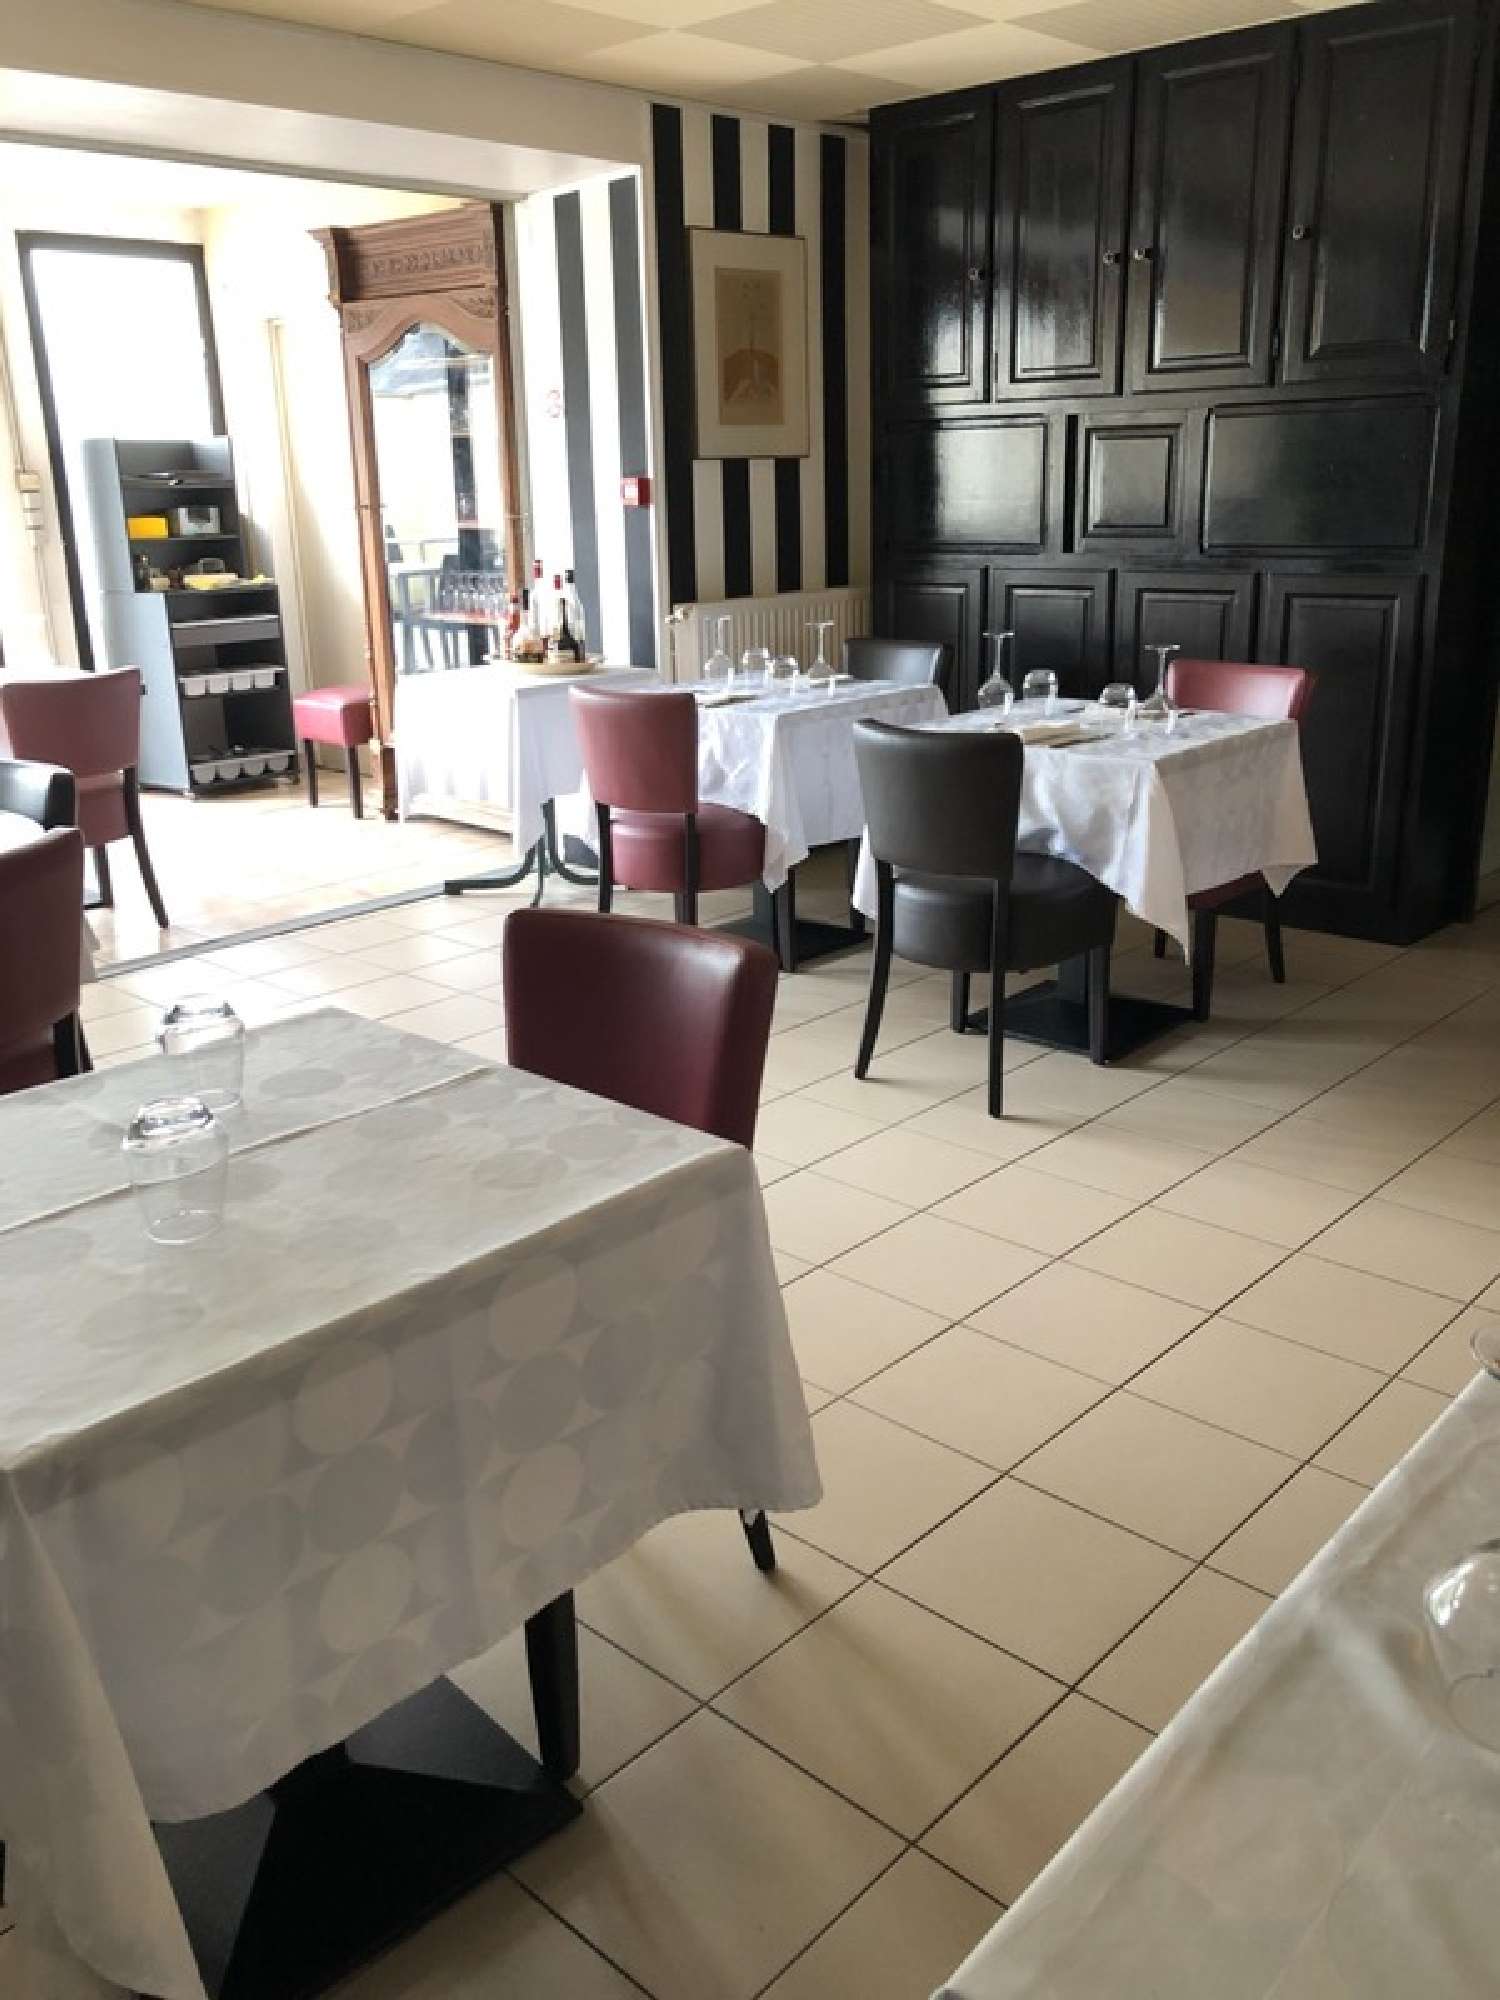  à vendre restaurant Saint-Pierre-de-Chignac Dordogne 6